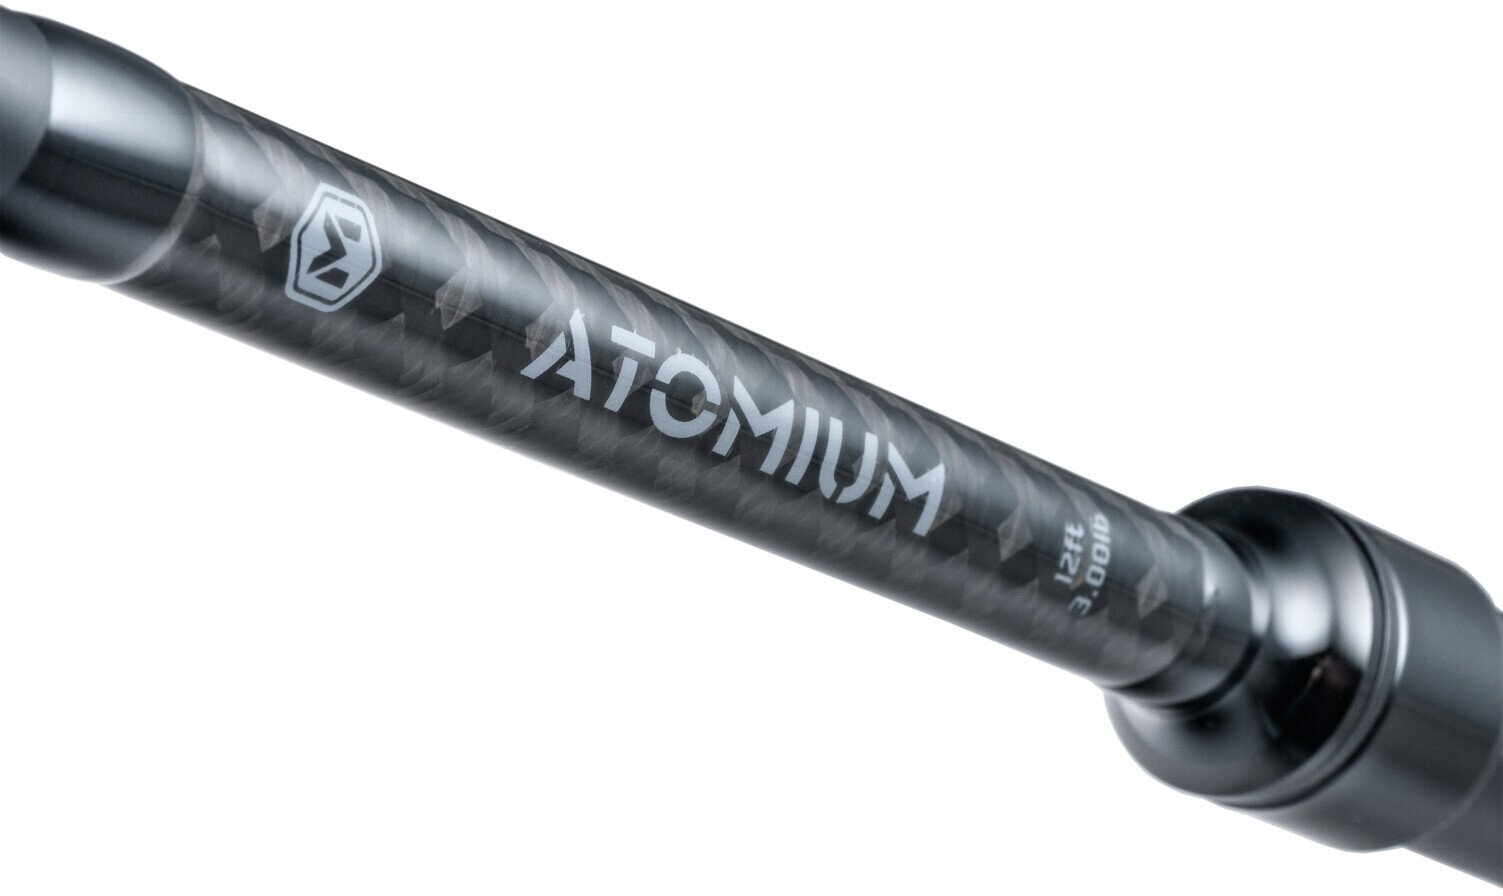 Kaprový prút Mivardi Atomium 300SH 3,0 m 3,5 lb 2 diely